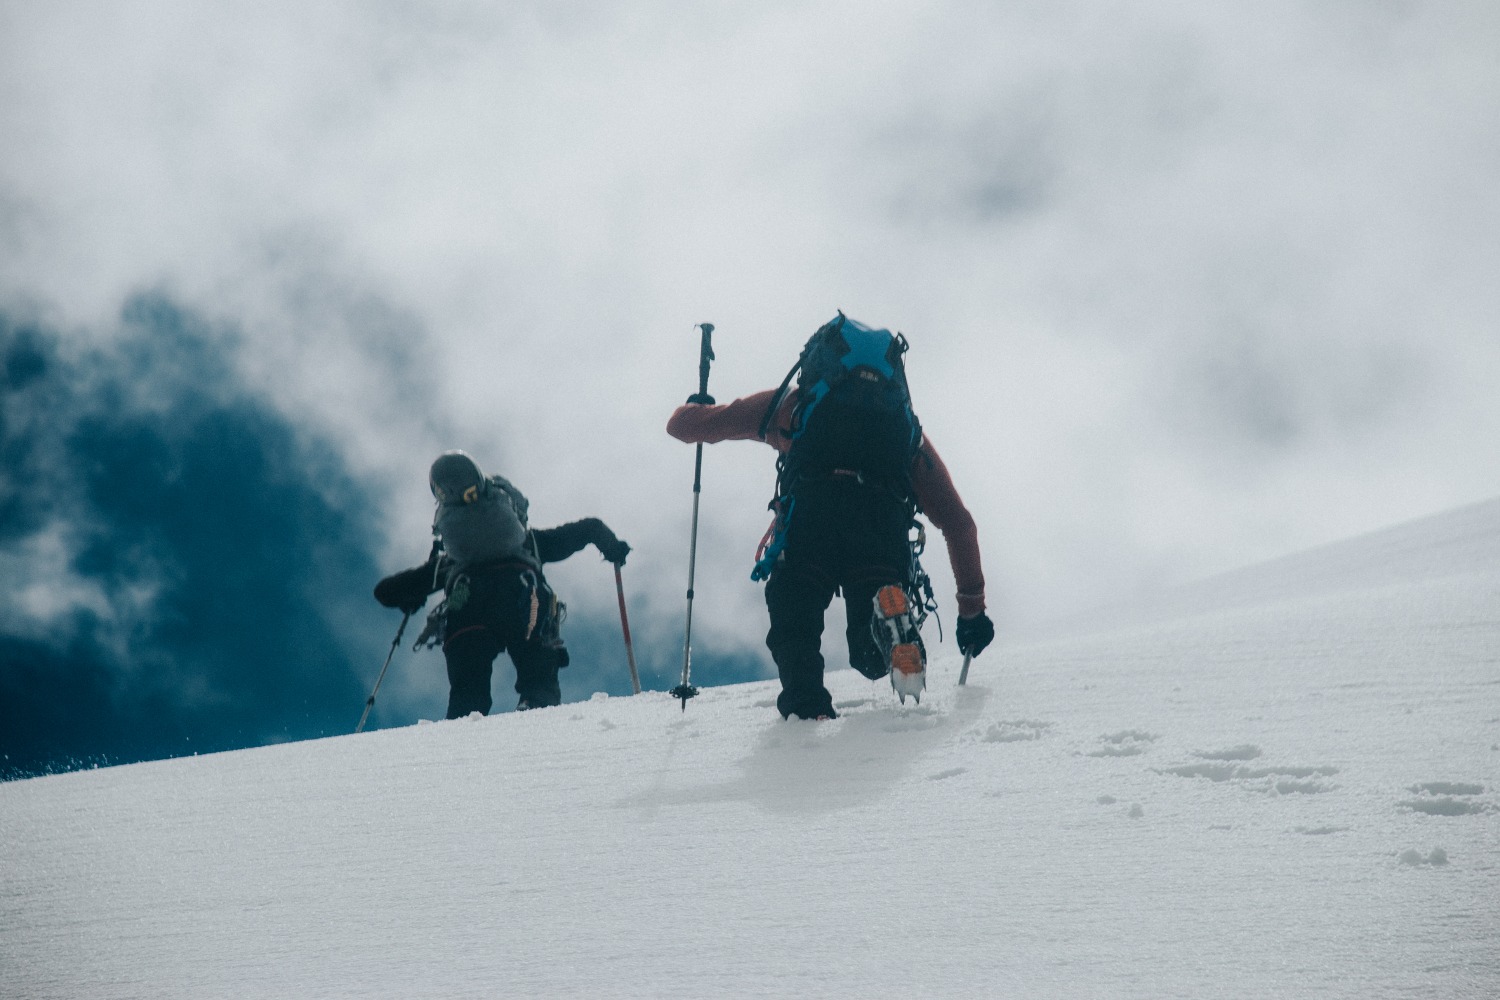 Спасены трое израильских туристов, попавших в снежную бурю в горах Непала